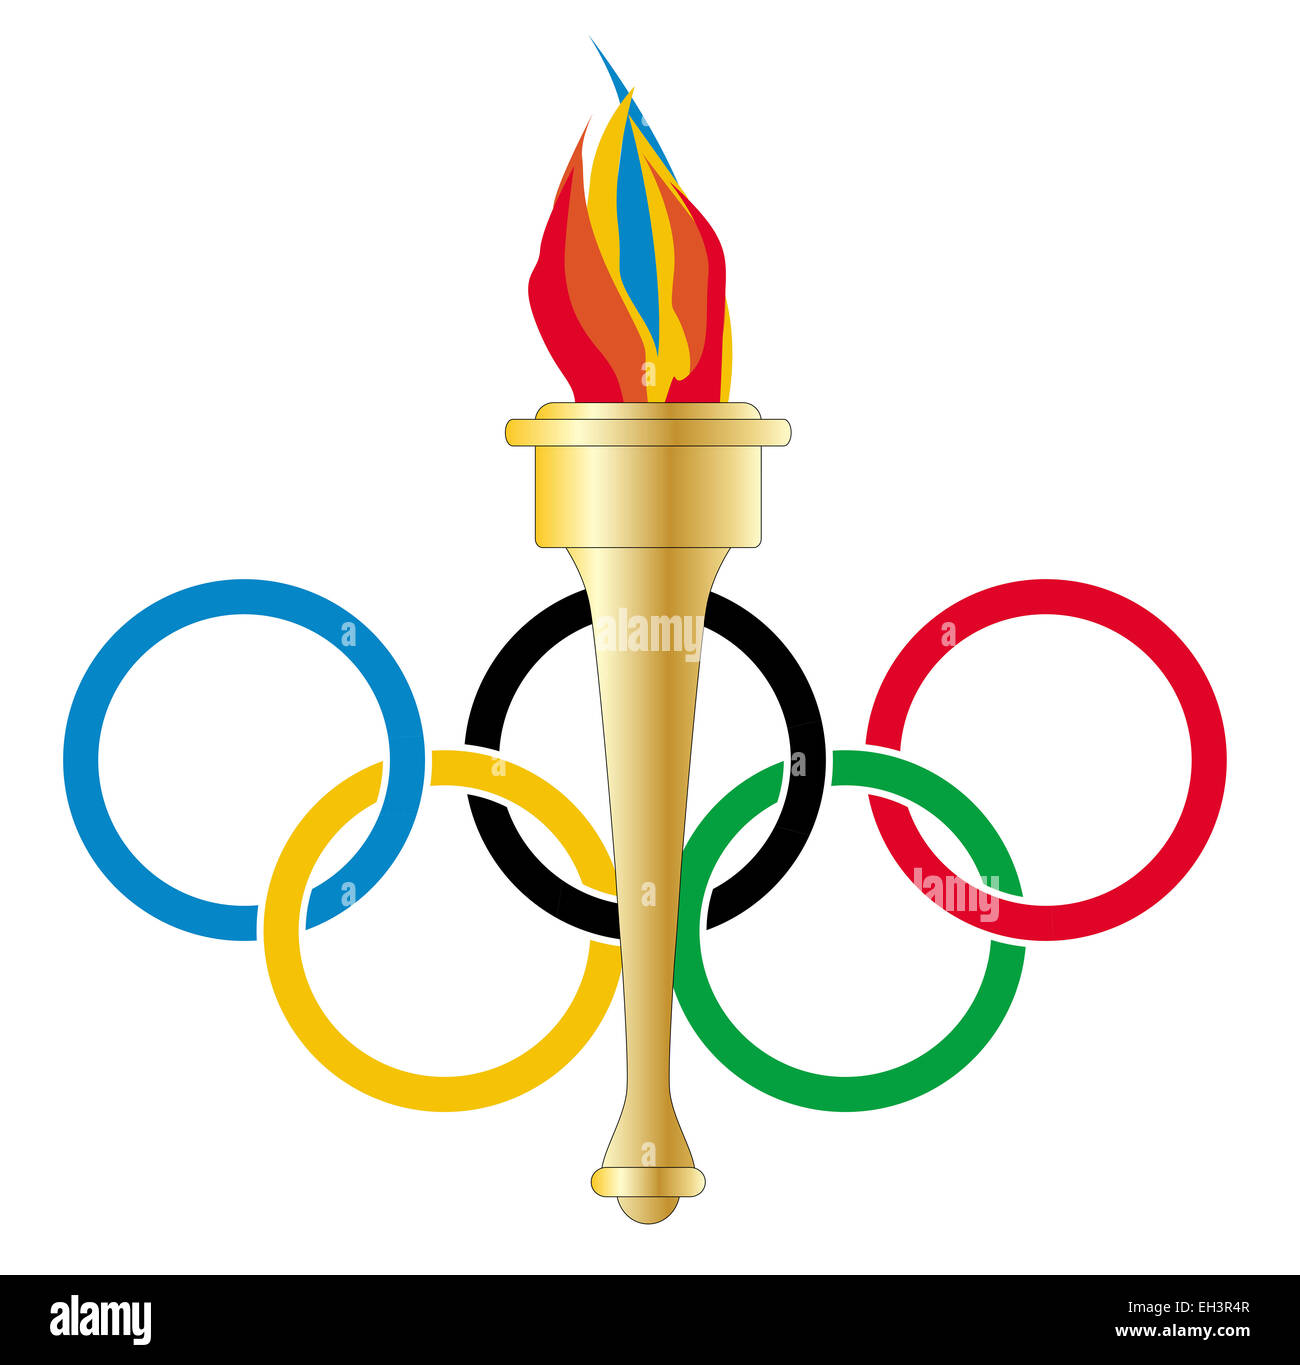 Anneaux de style olympique avec une torche de style olympique avec la flamme sur un fond blanc Banque D'Images